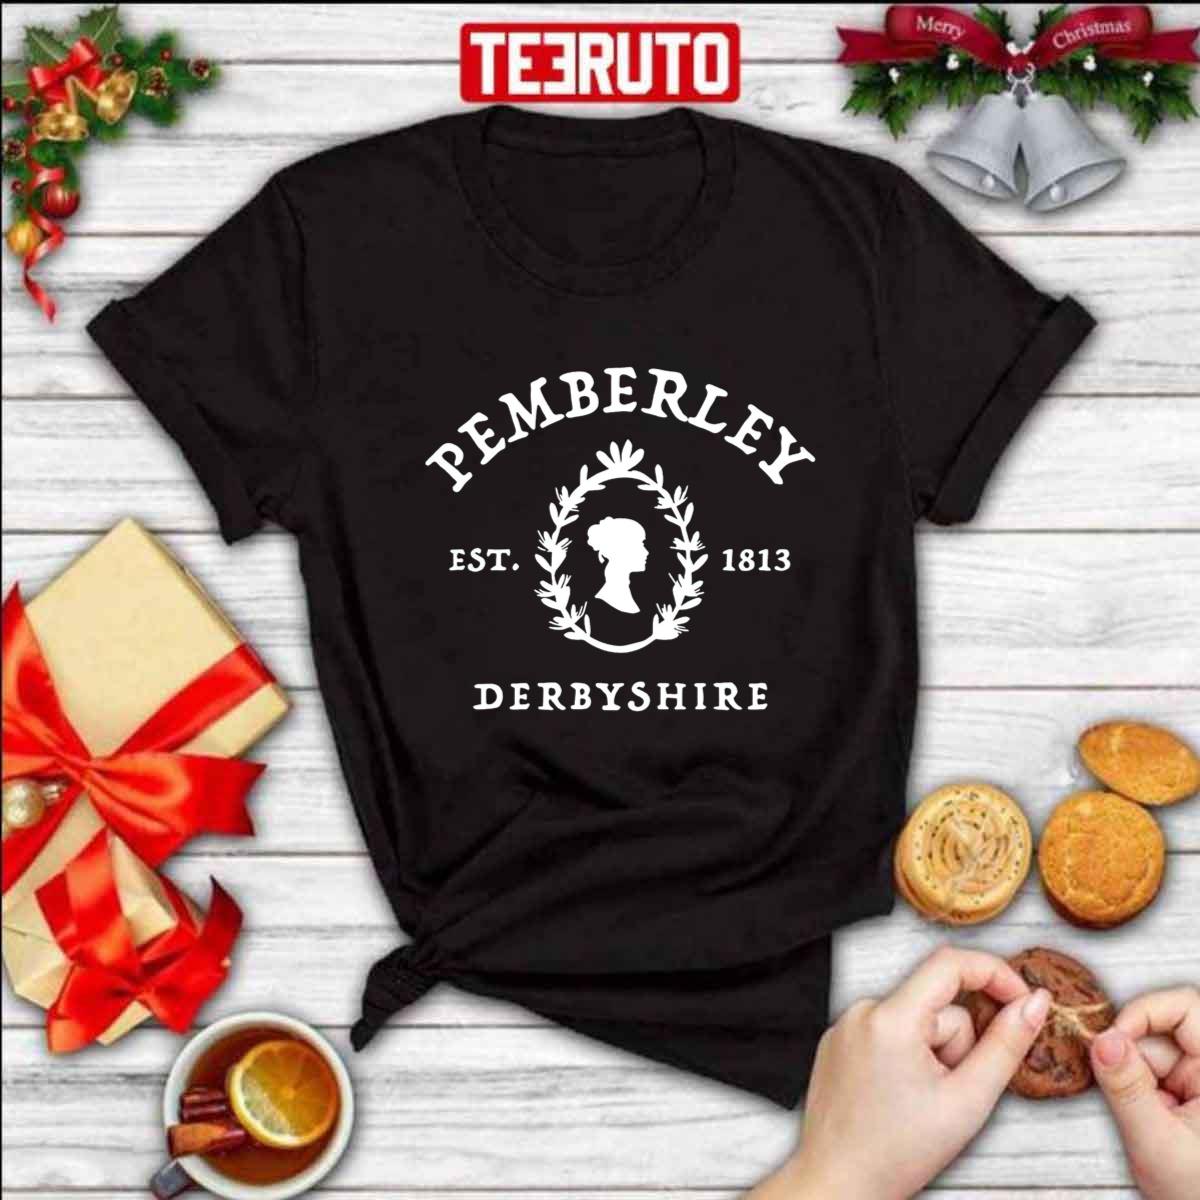 Pemberley DerbyShire Jane Austen EST 1813 Unisex T-Shirt